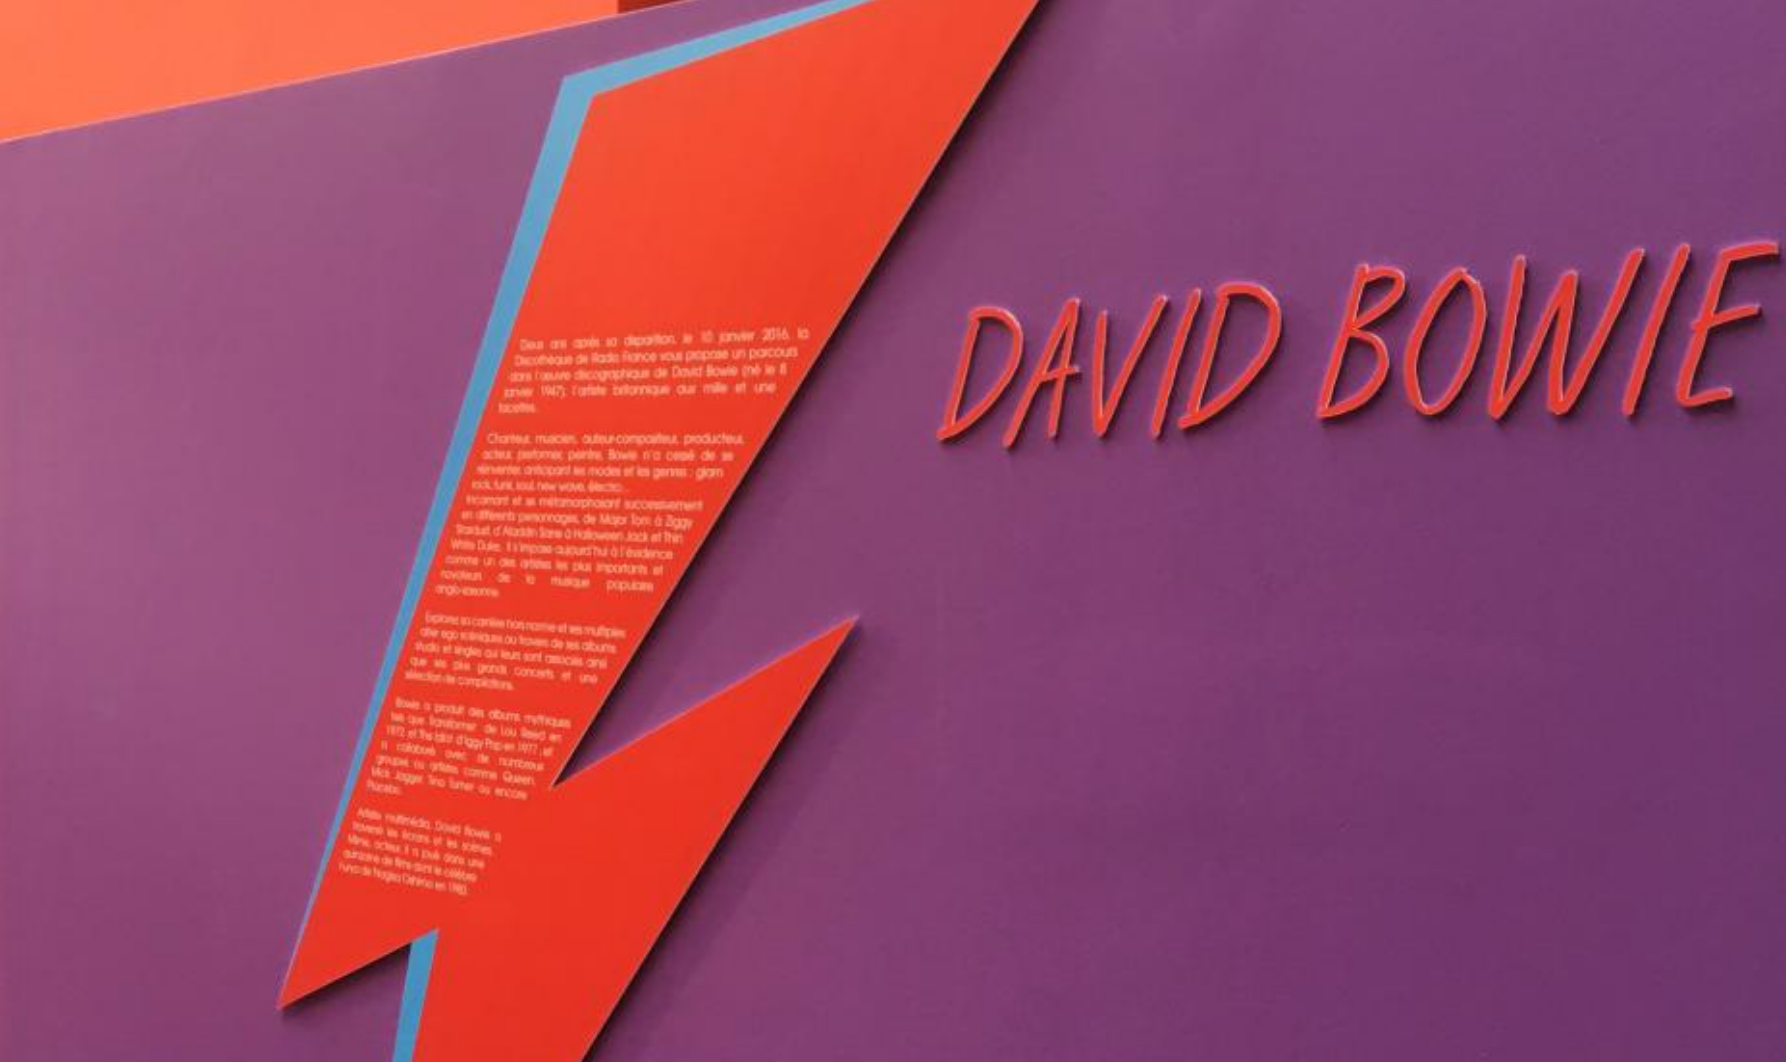 Maison de la radio : une exposition de vinyles de David Bowie